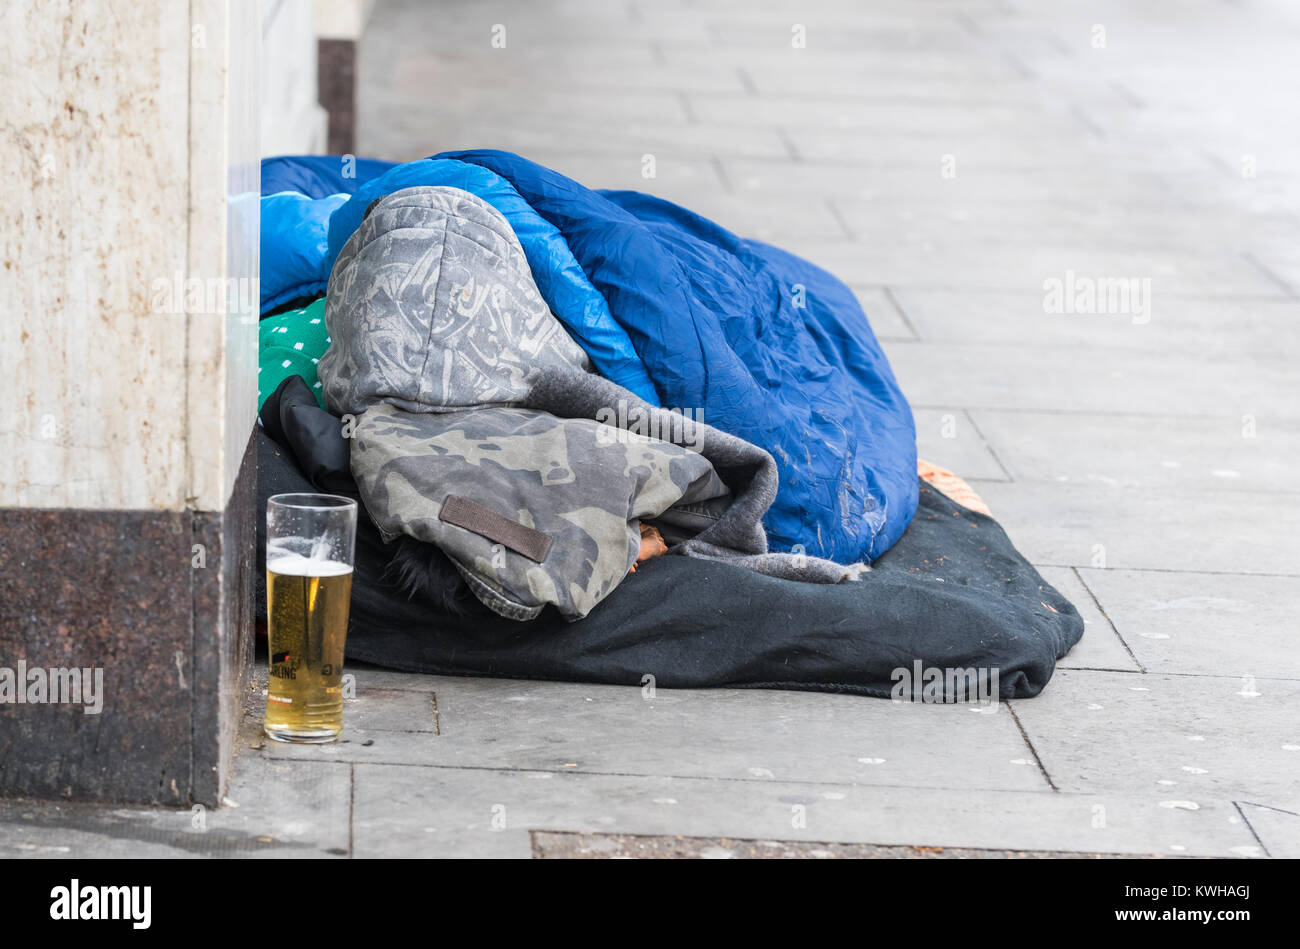 La persona senza dimora di dormire su strade con un parzialmente bevuto bicchiere di lager (alcool) vicino a Brighton, East Sussex, Inghilterra, Regno Unito. Foto Stock